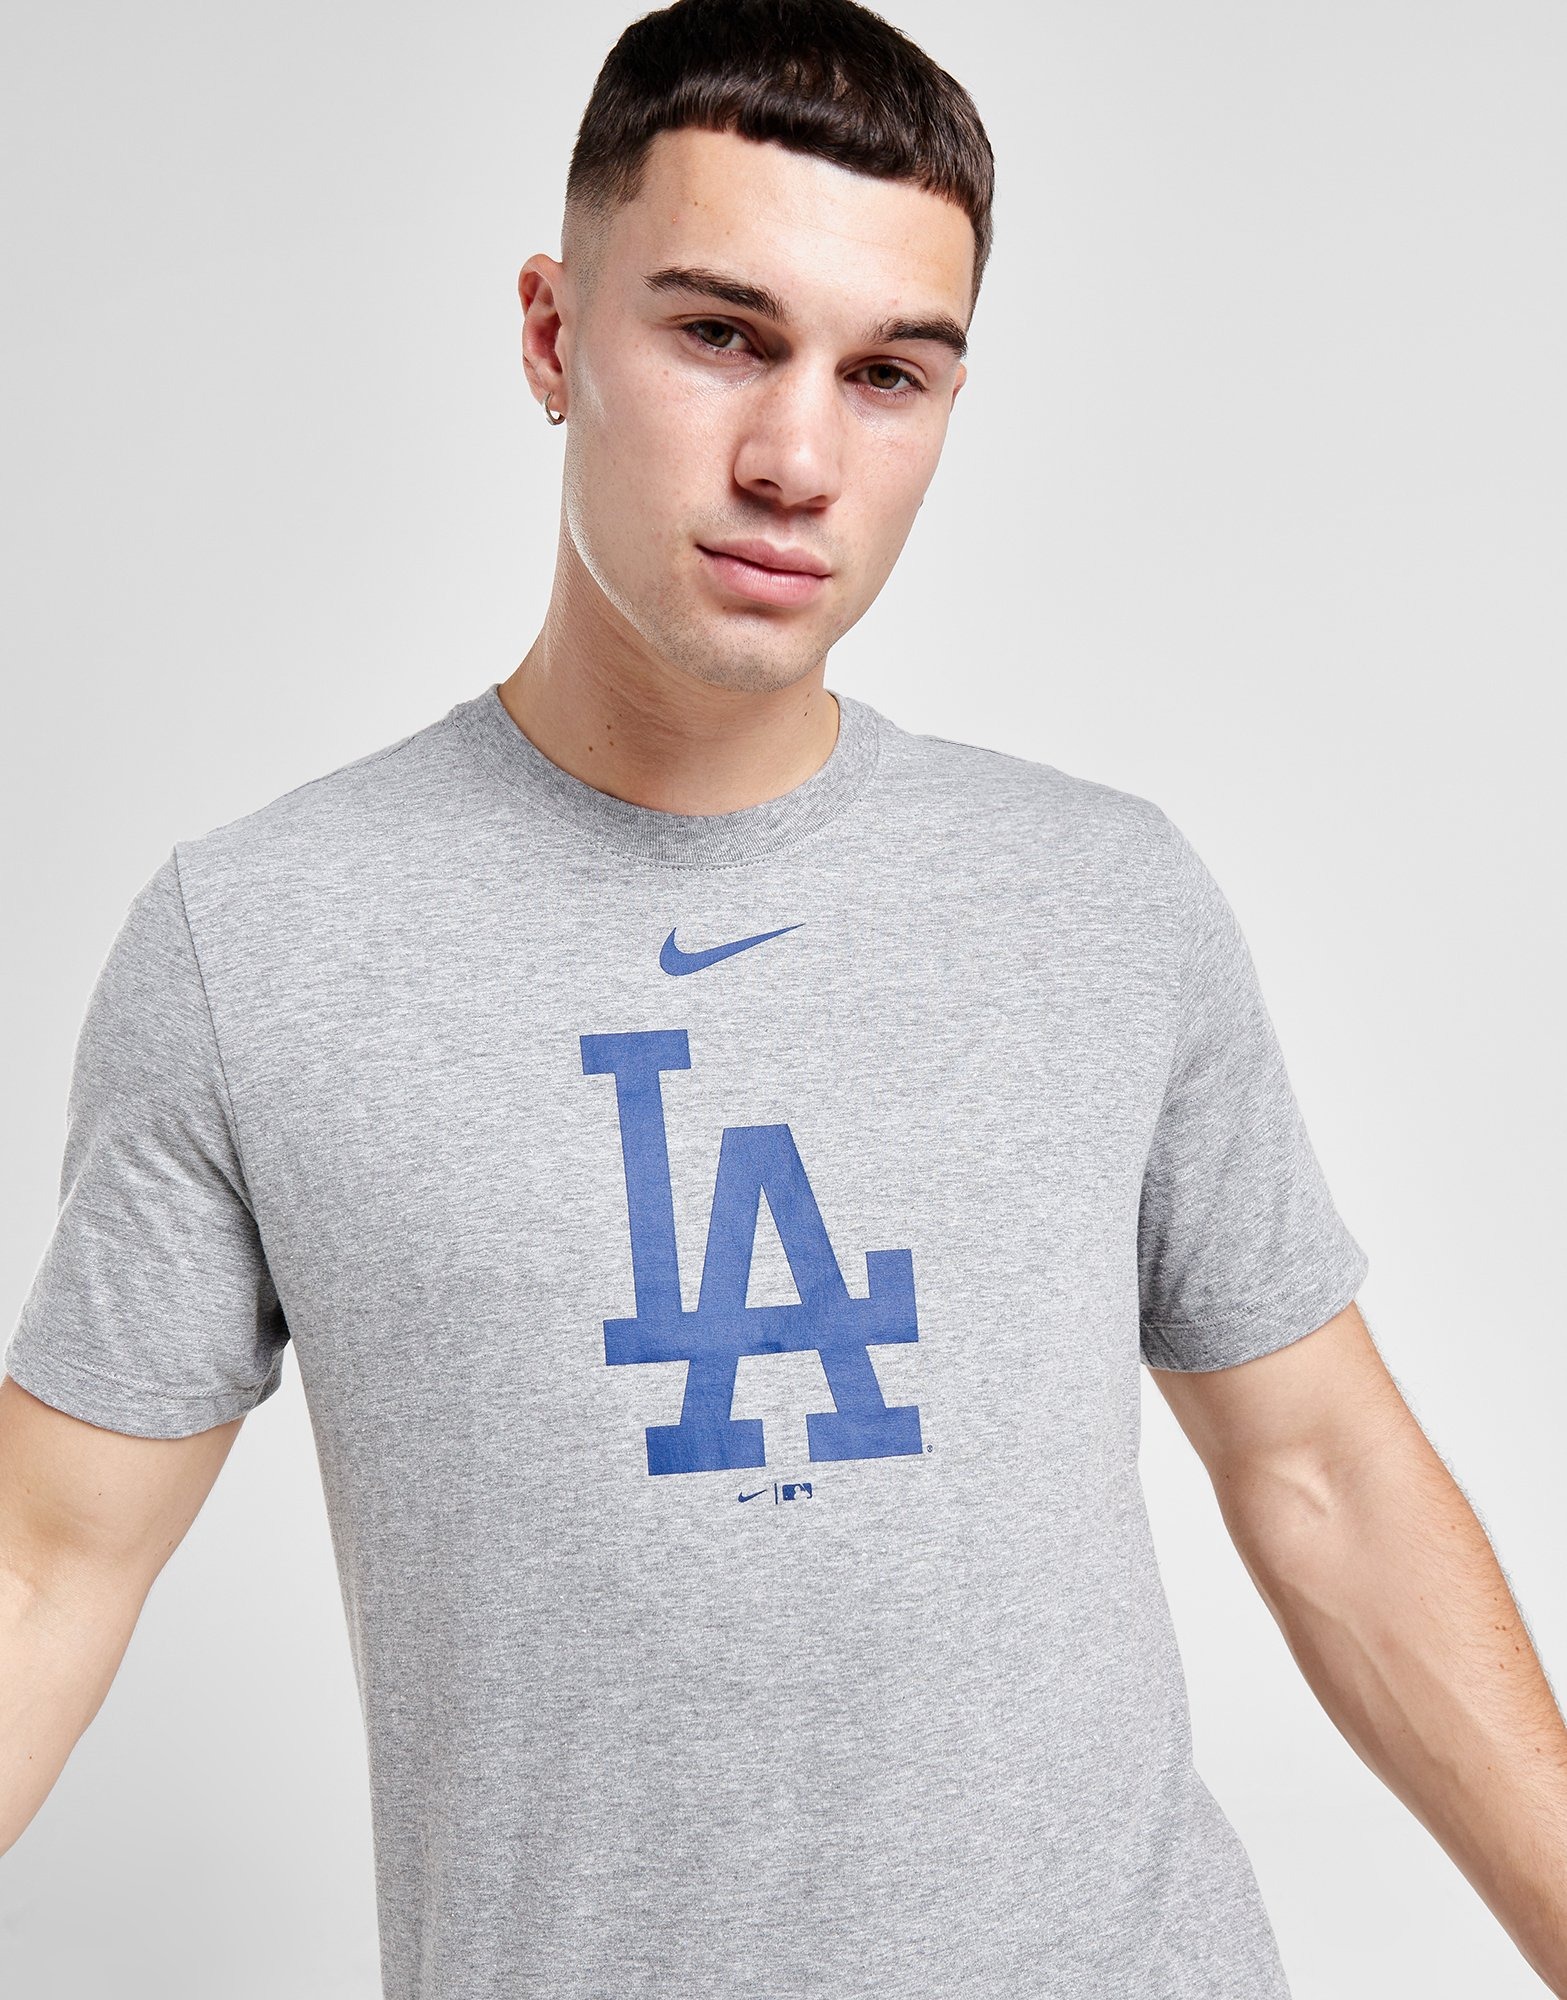 L.A. Dodgers Big & Tall T-Shirts, Dodgers Tees, Shirts